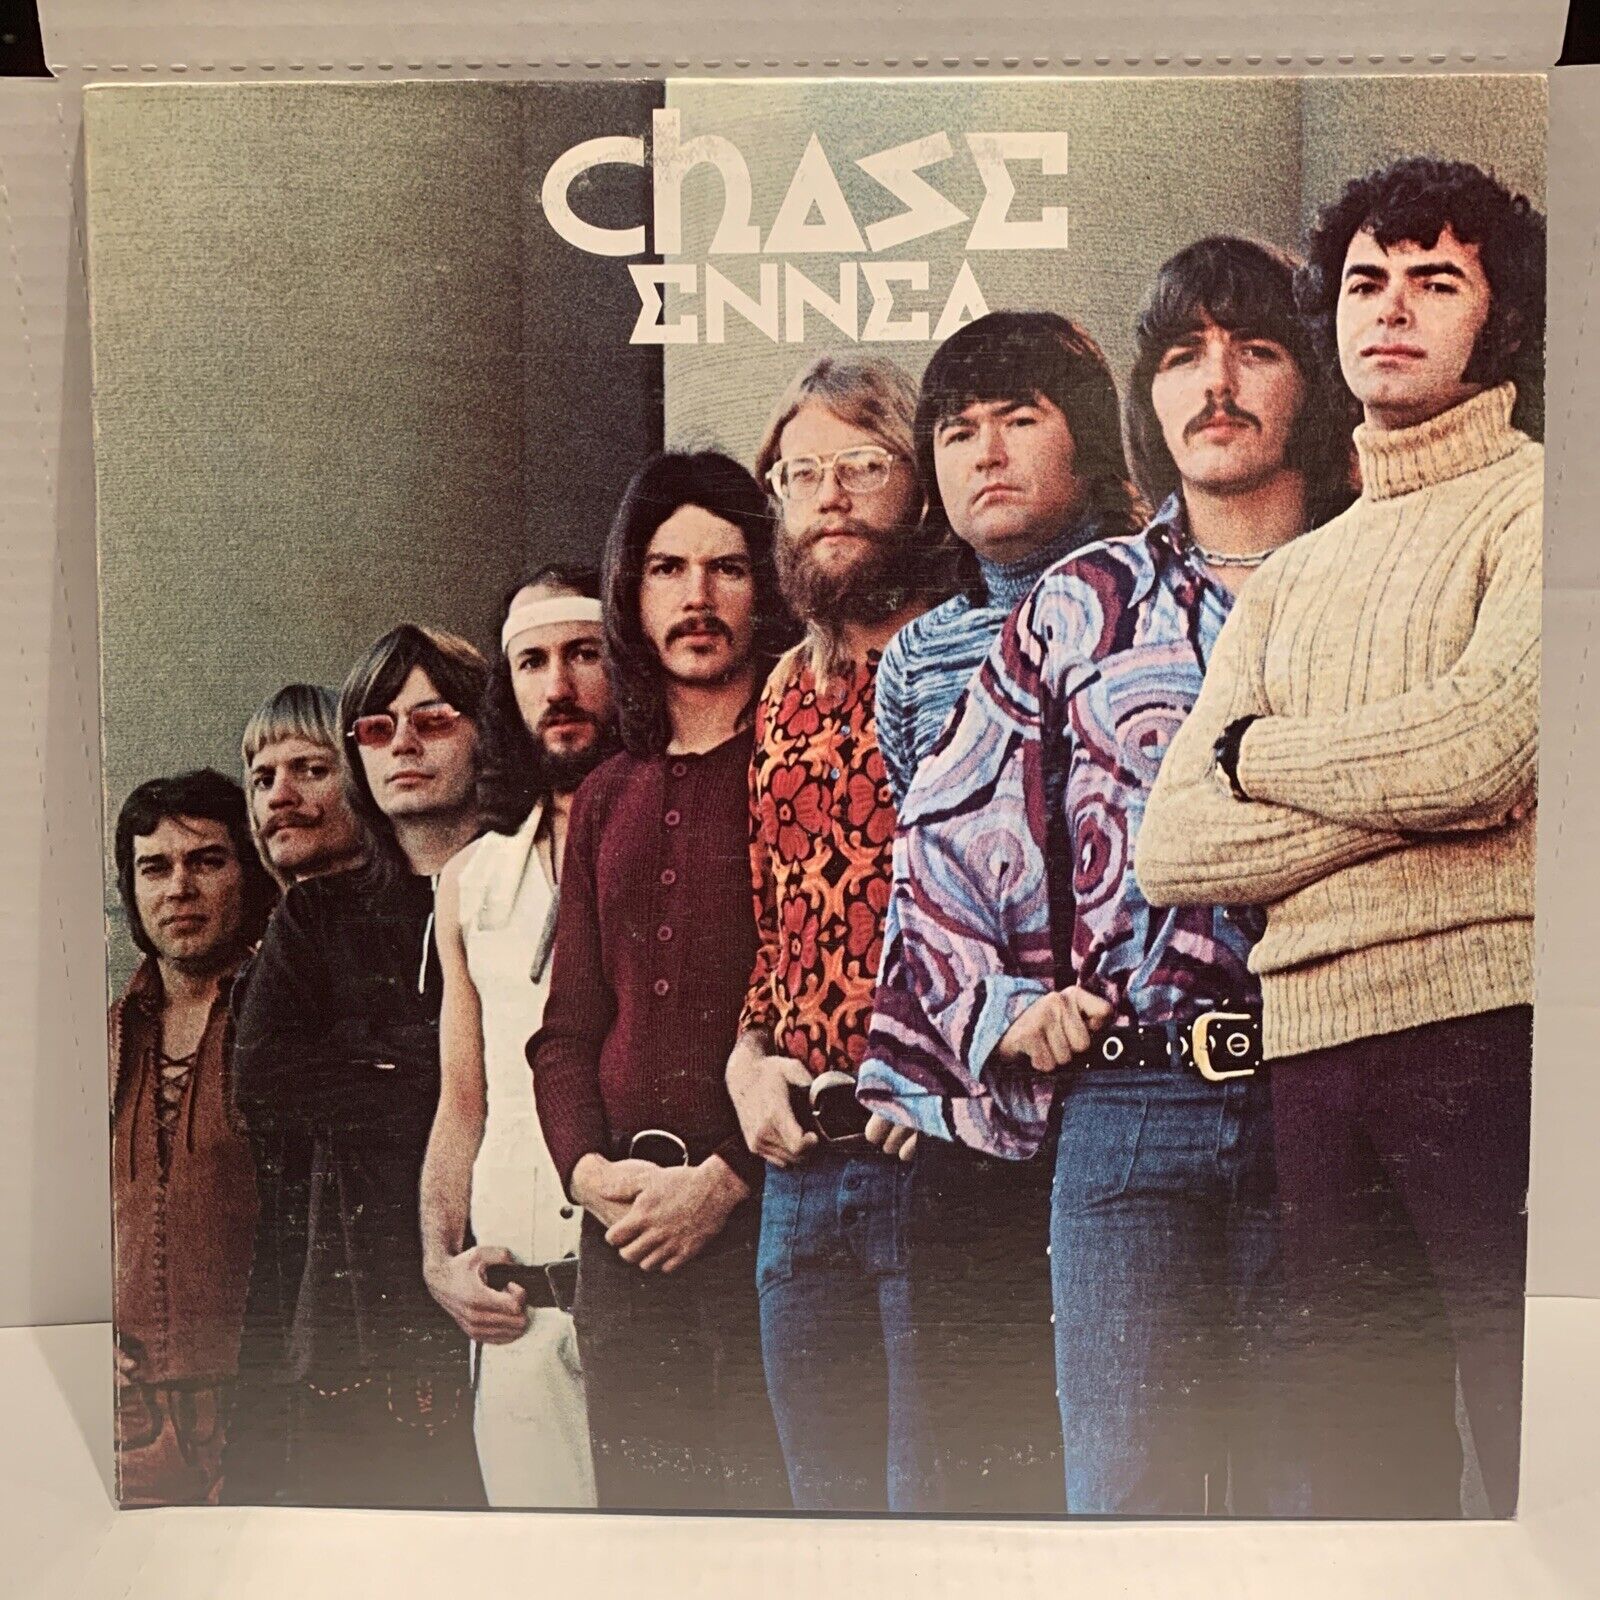 Vtg. 1972 Chase Ennea LP Vinyl  Epic Records AL-31097 CBS Inc. NM/Mint